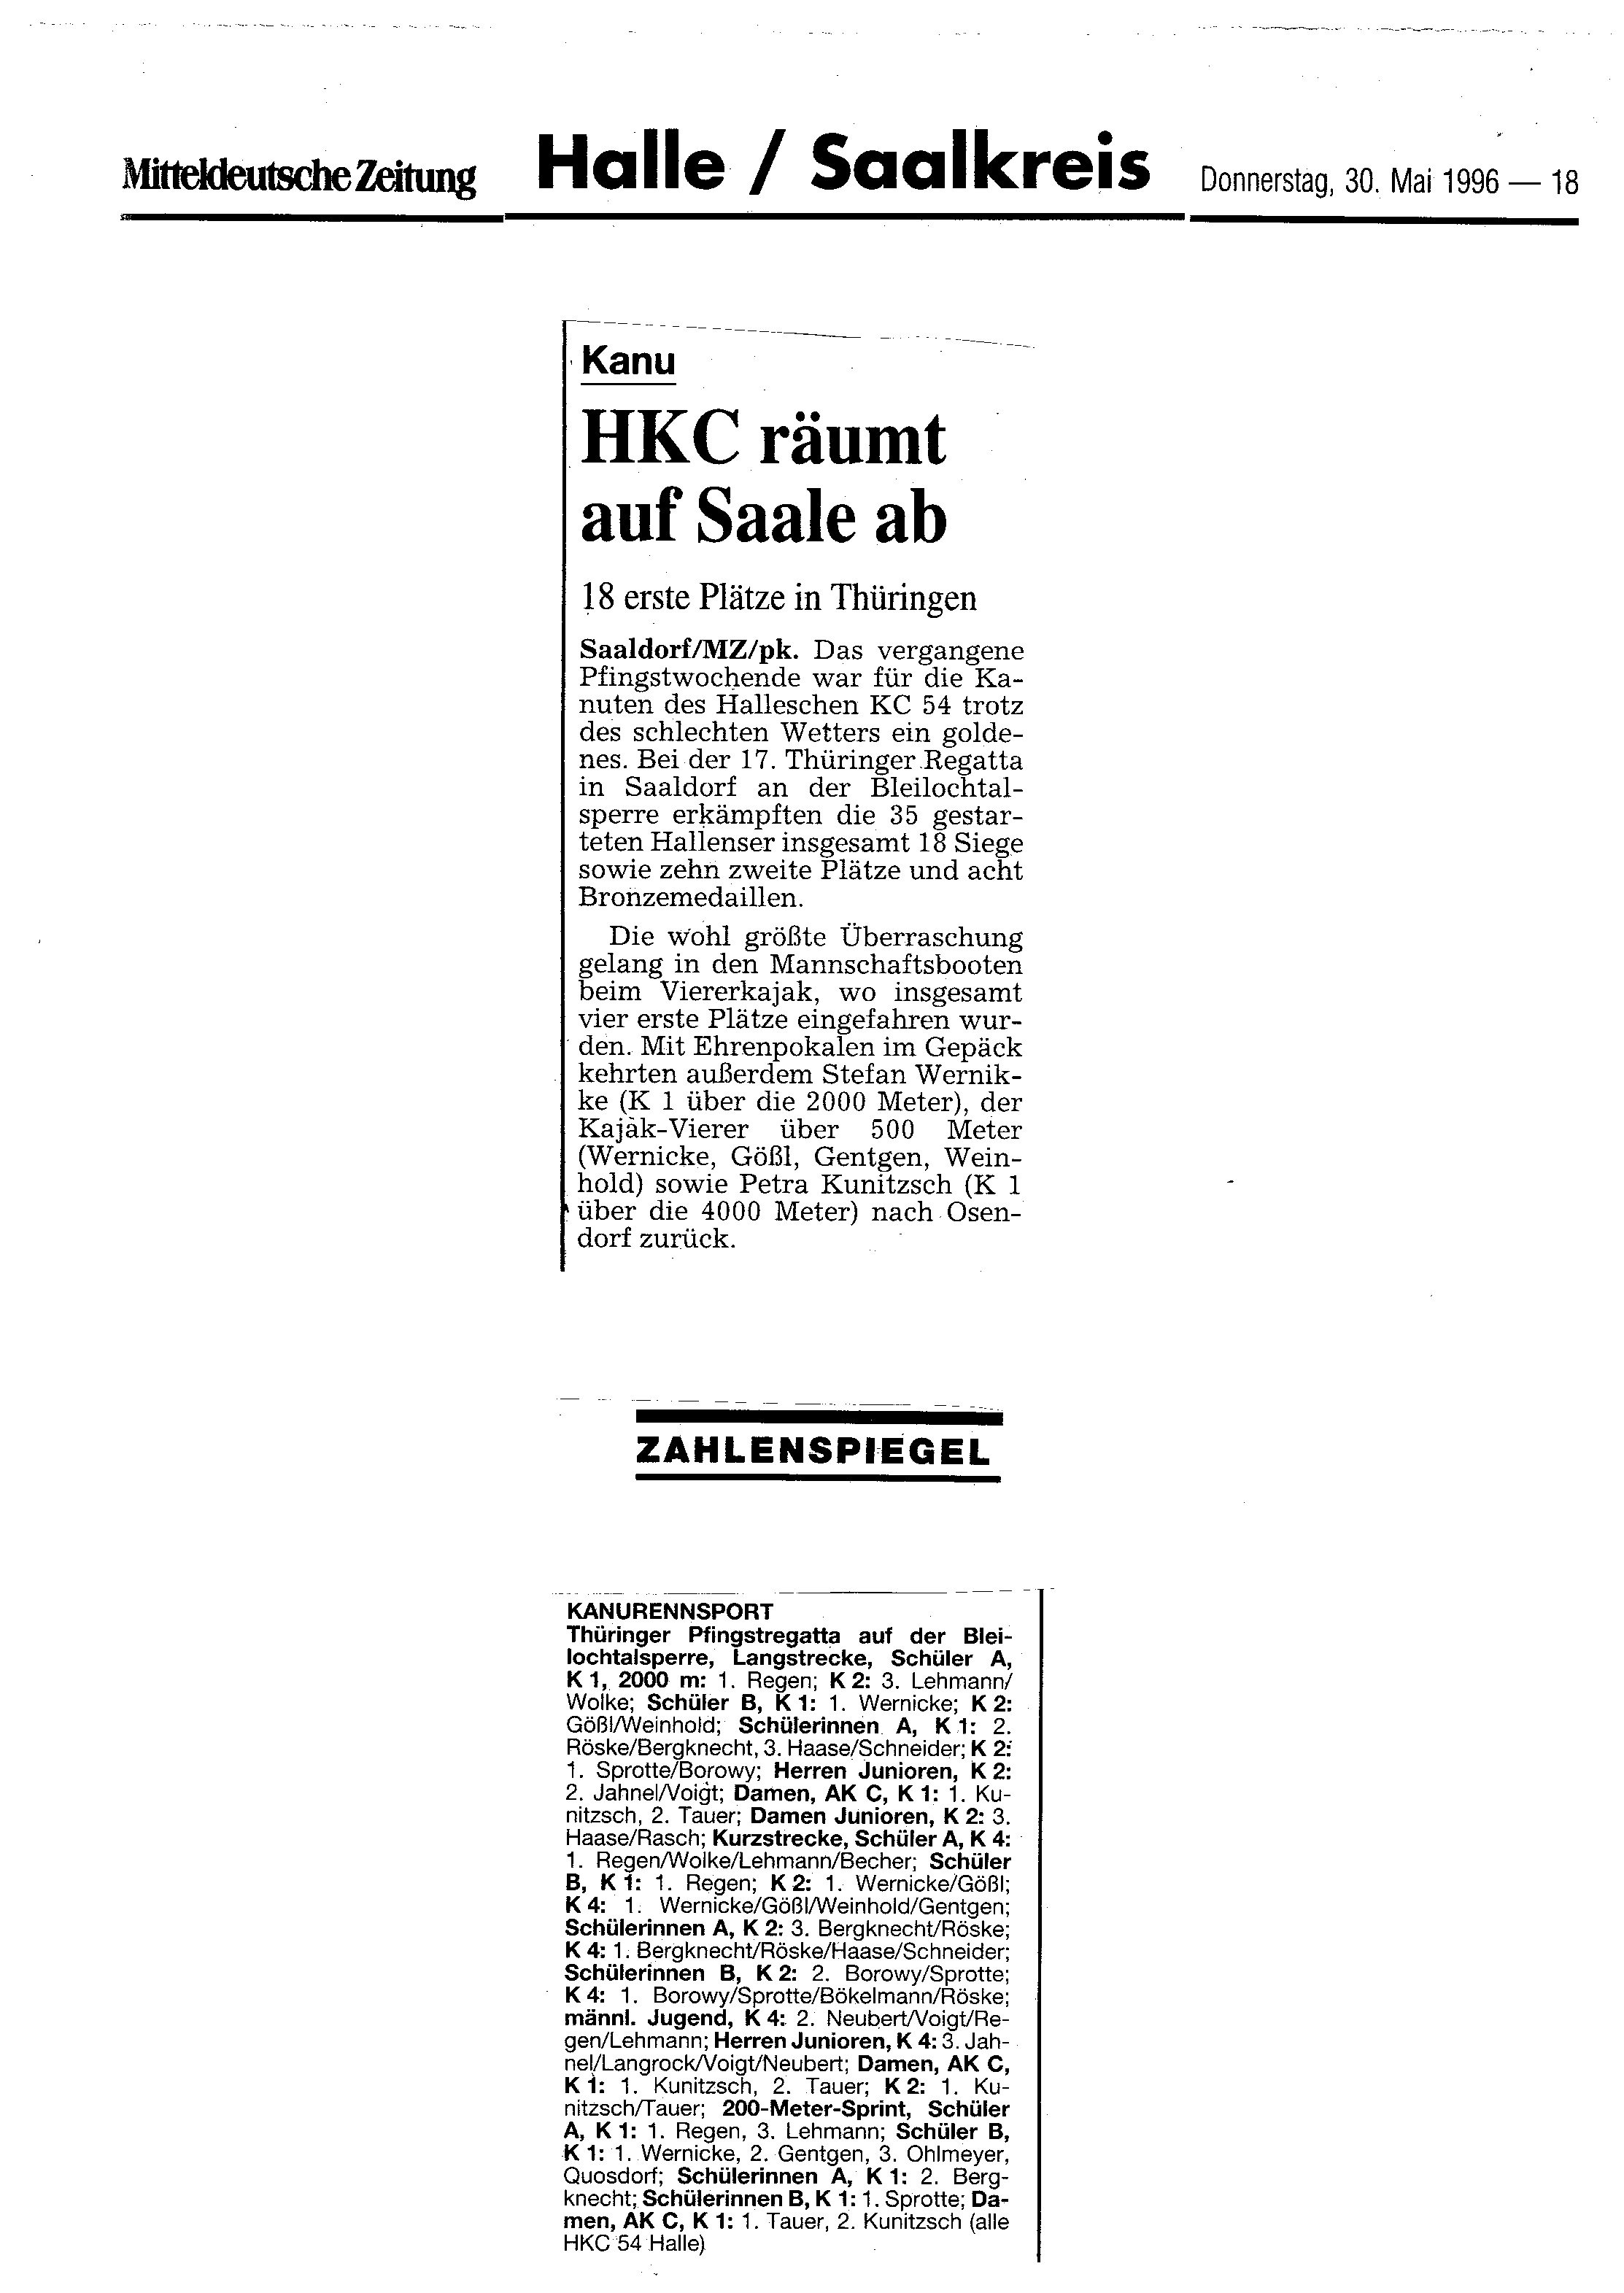 1996-05-30 MZ HKC räumt auf Saale ab